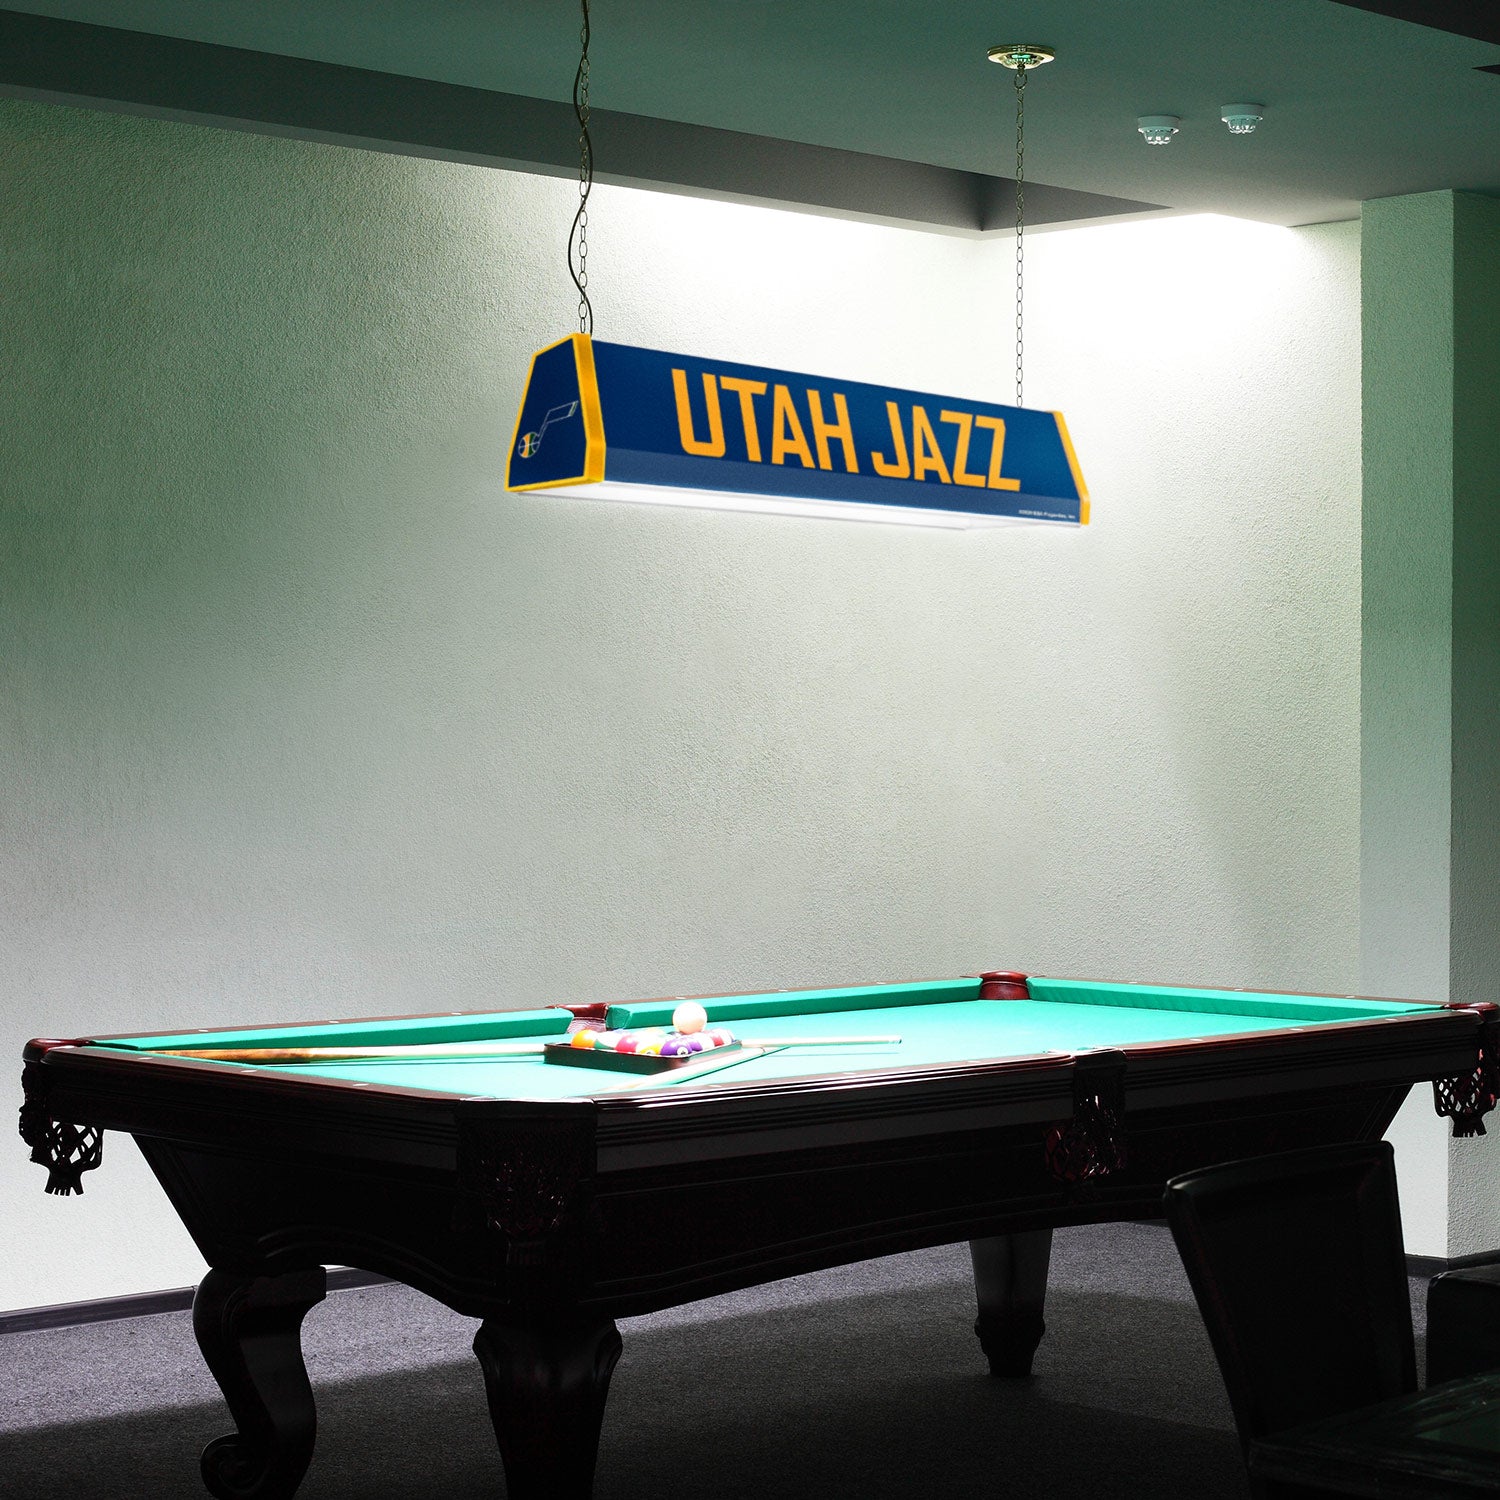 Utah Jazz Standard Pool Table Light Room View